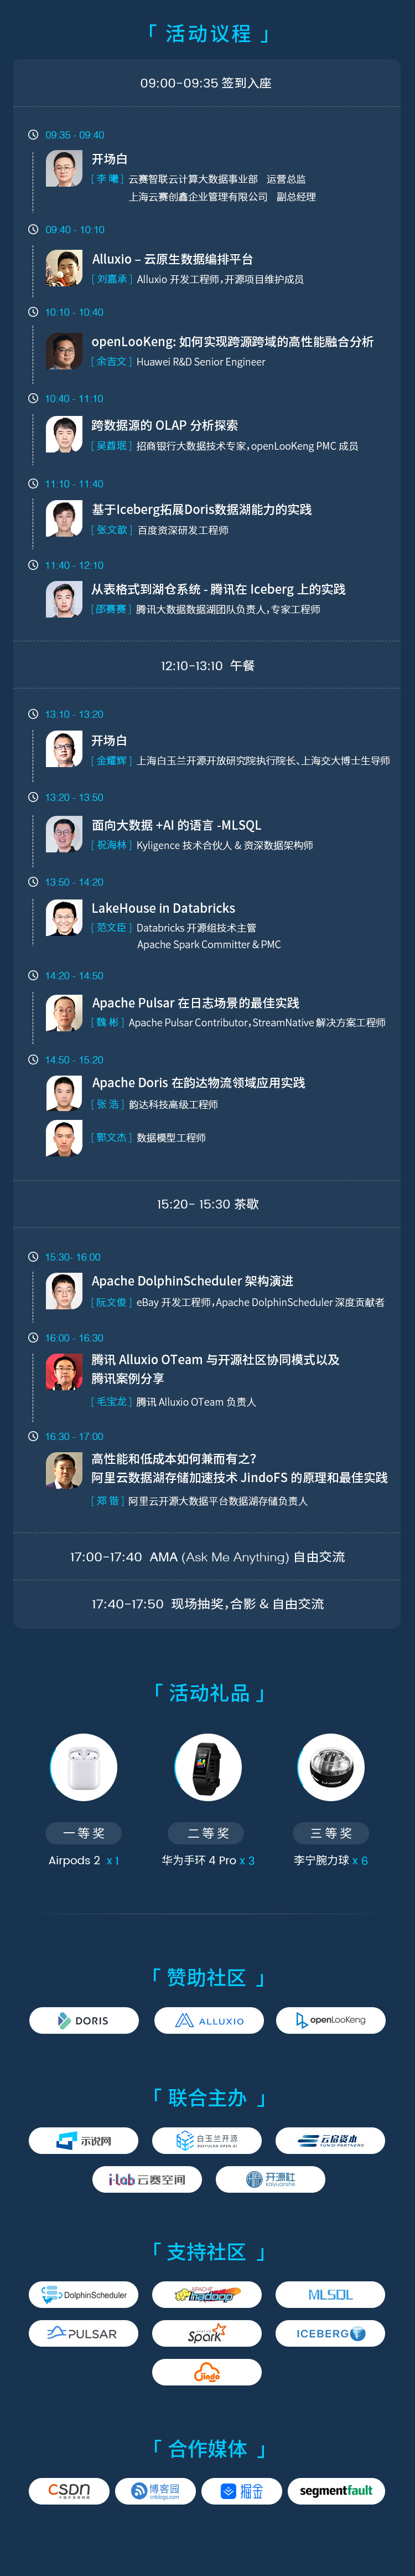 上海开源大数据技术Meetup